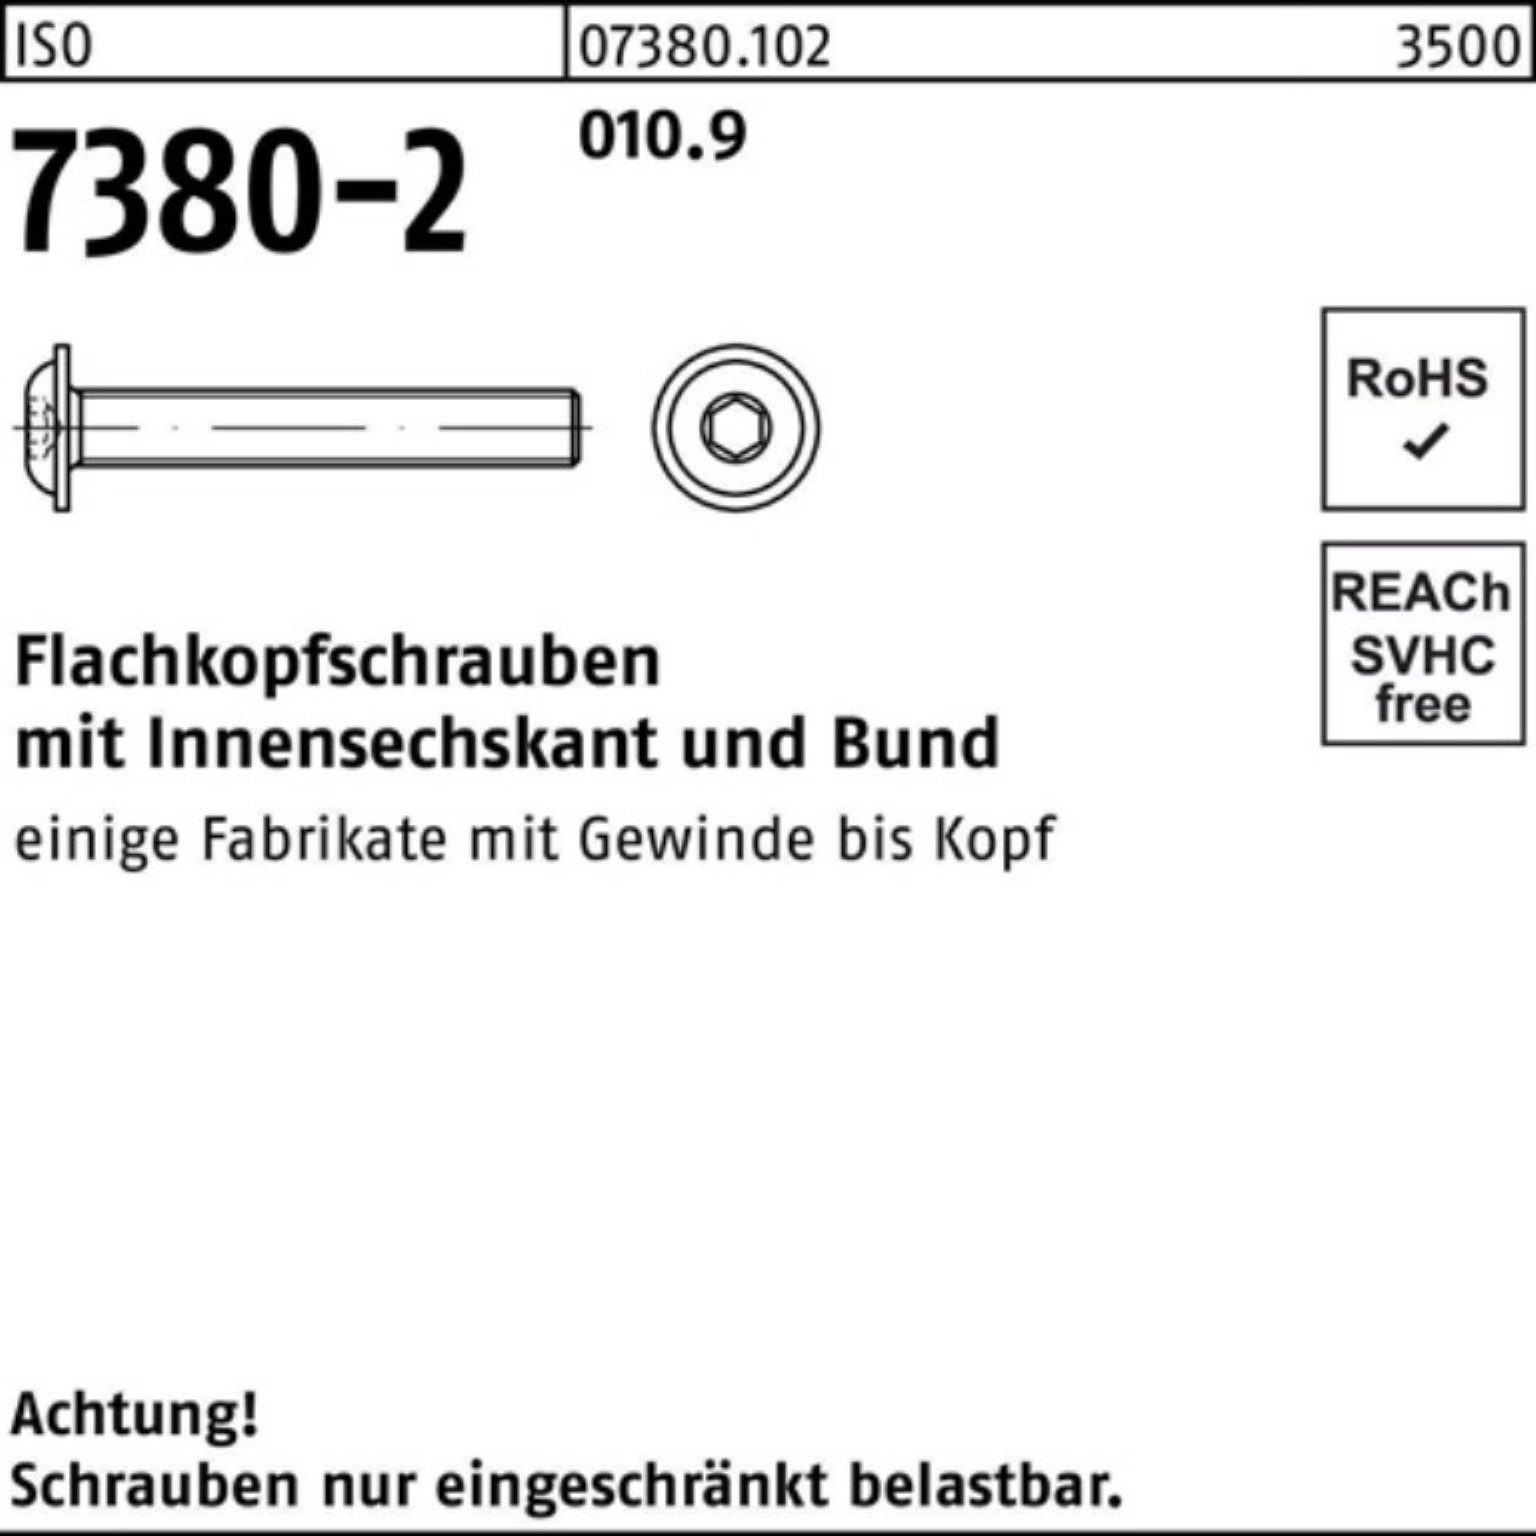 Reyher Schraube 500er 7380-2 Bund/Innen-6kt Flachkopfschraube 010.9 Pack M5x ISO 50 25